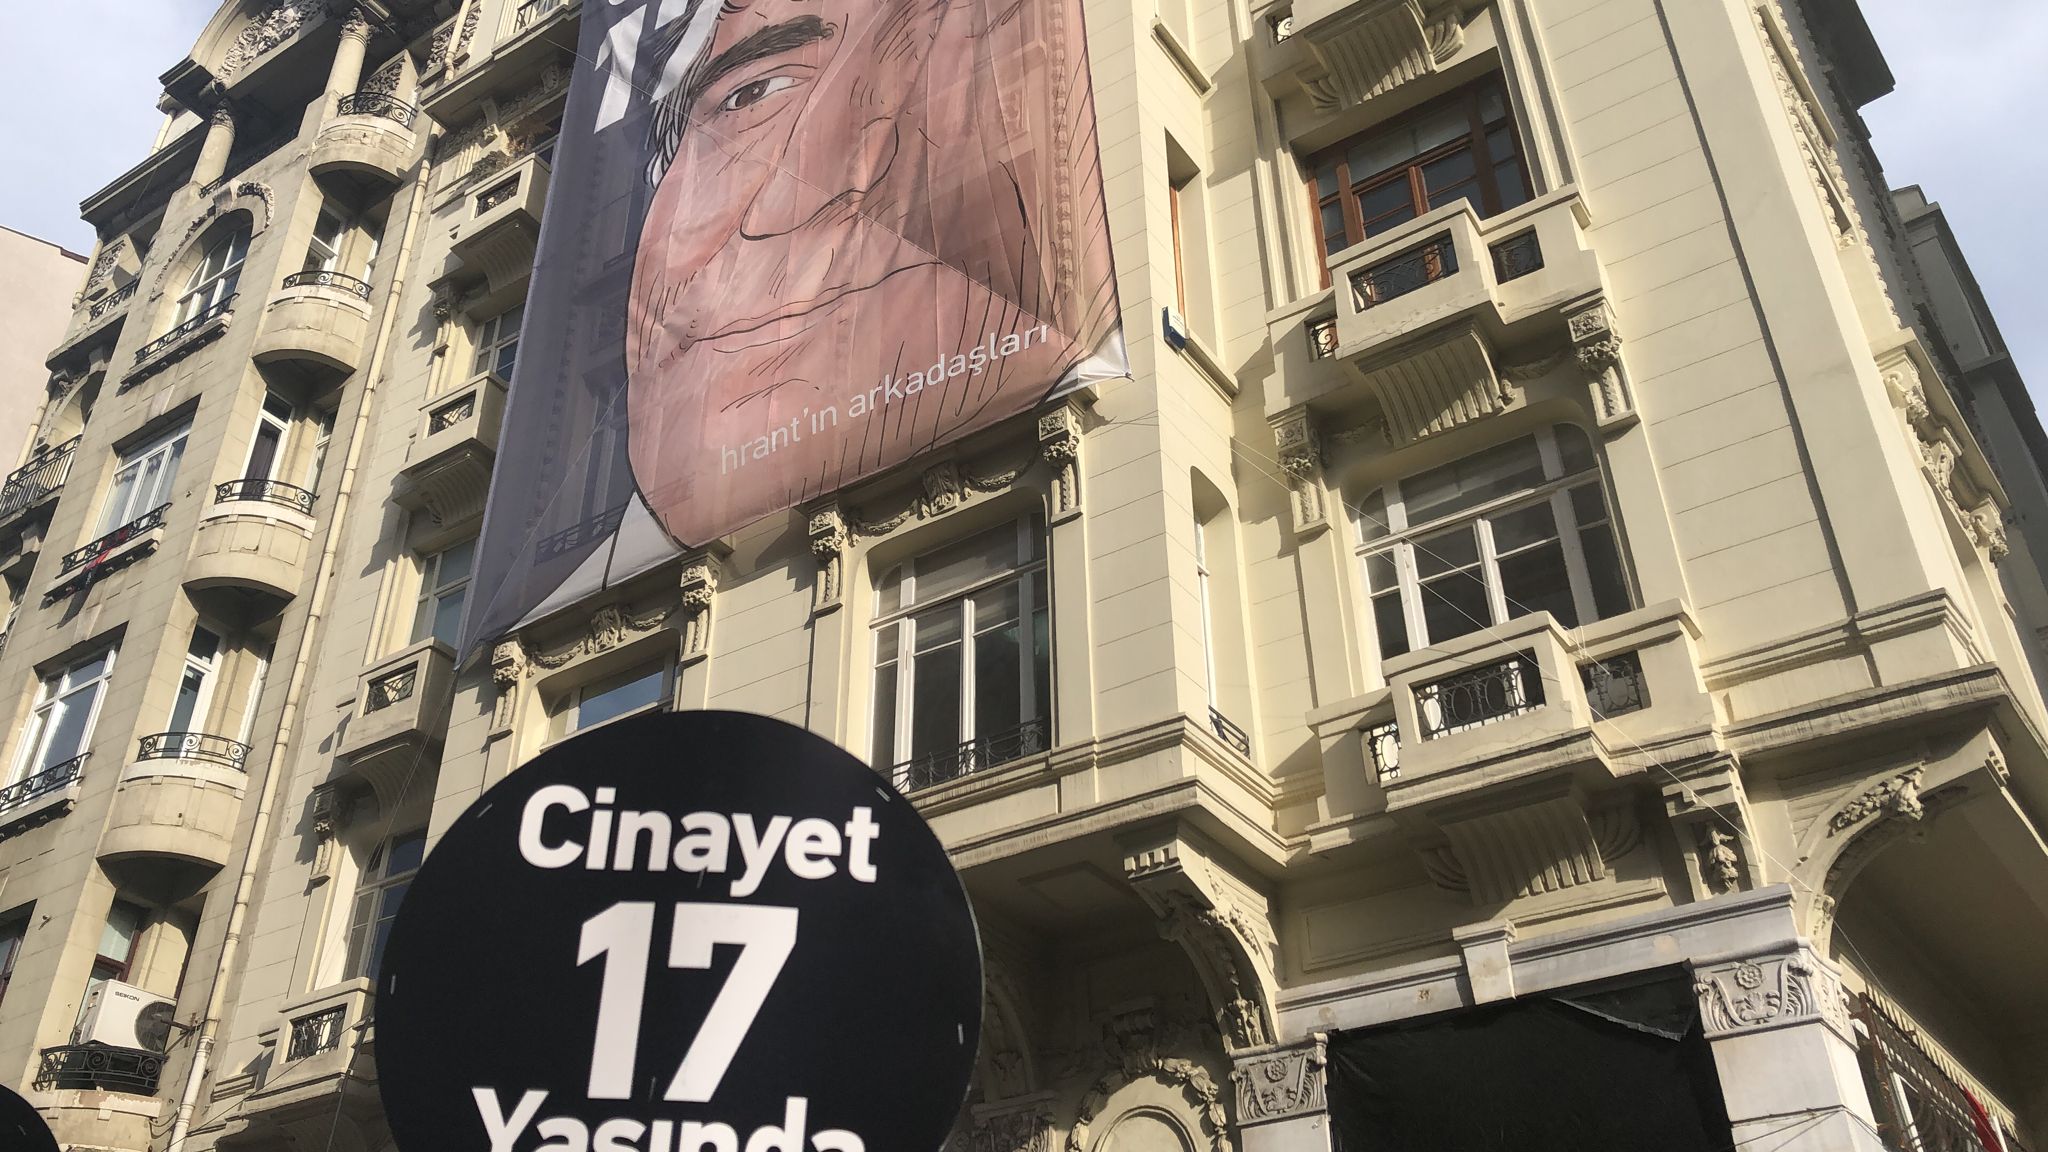 Hrant Dink vurulduğu yerde anıldı: Cinayet 17 yaşında!